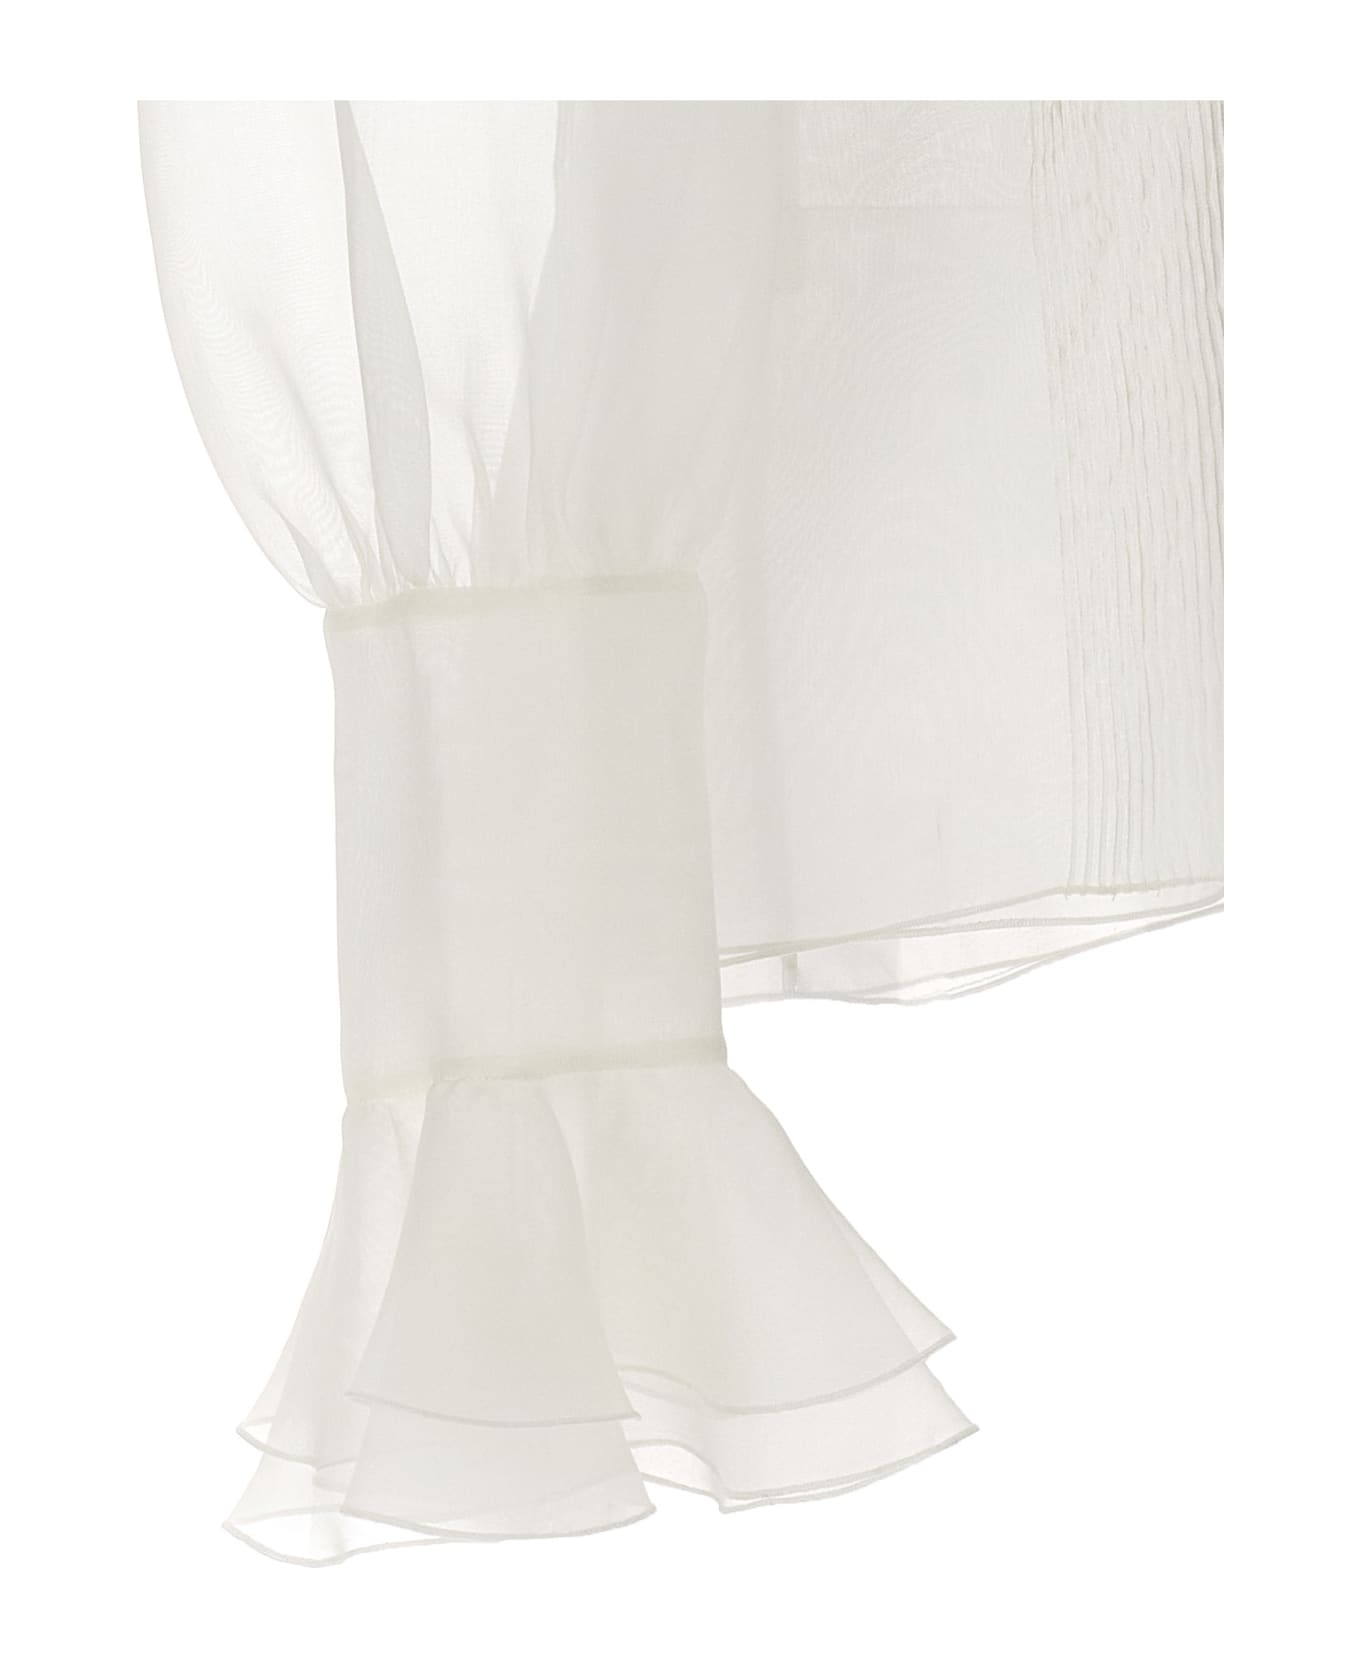 Giambattista Valli Ruffle Collar Shirt - White